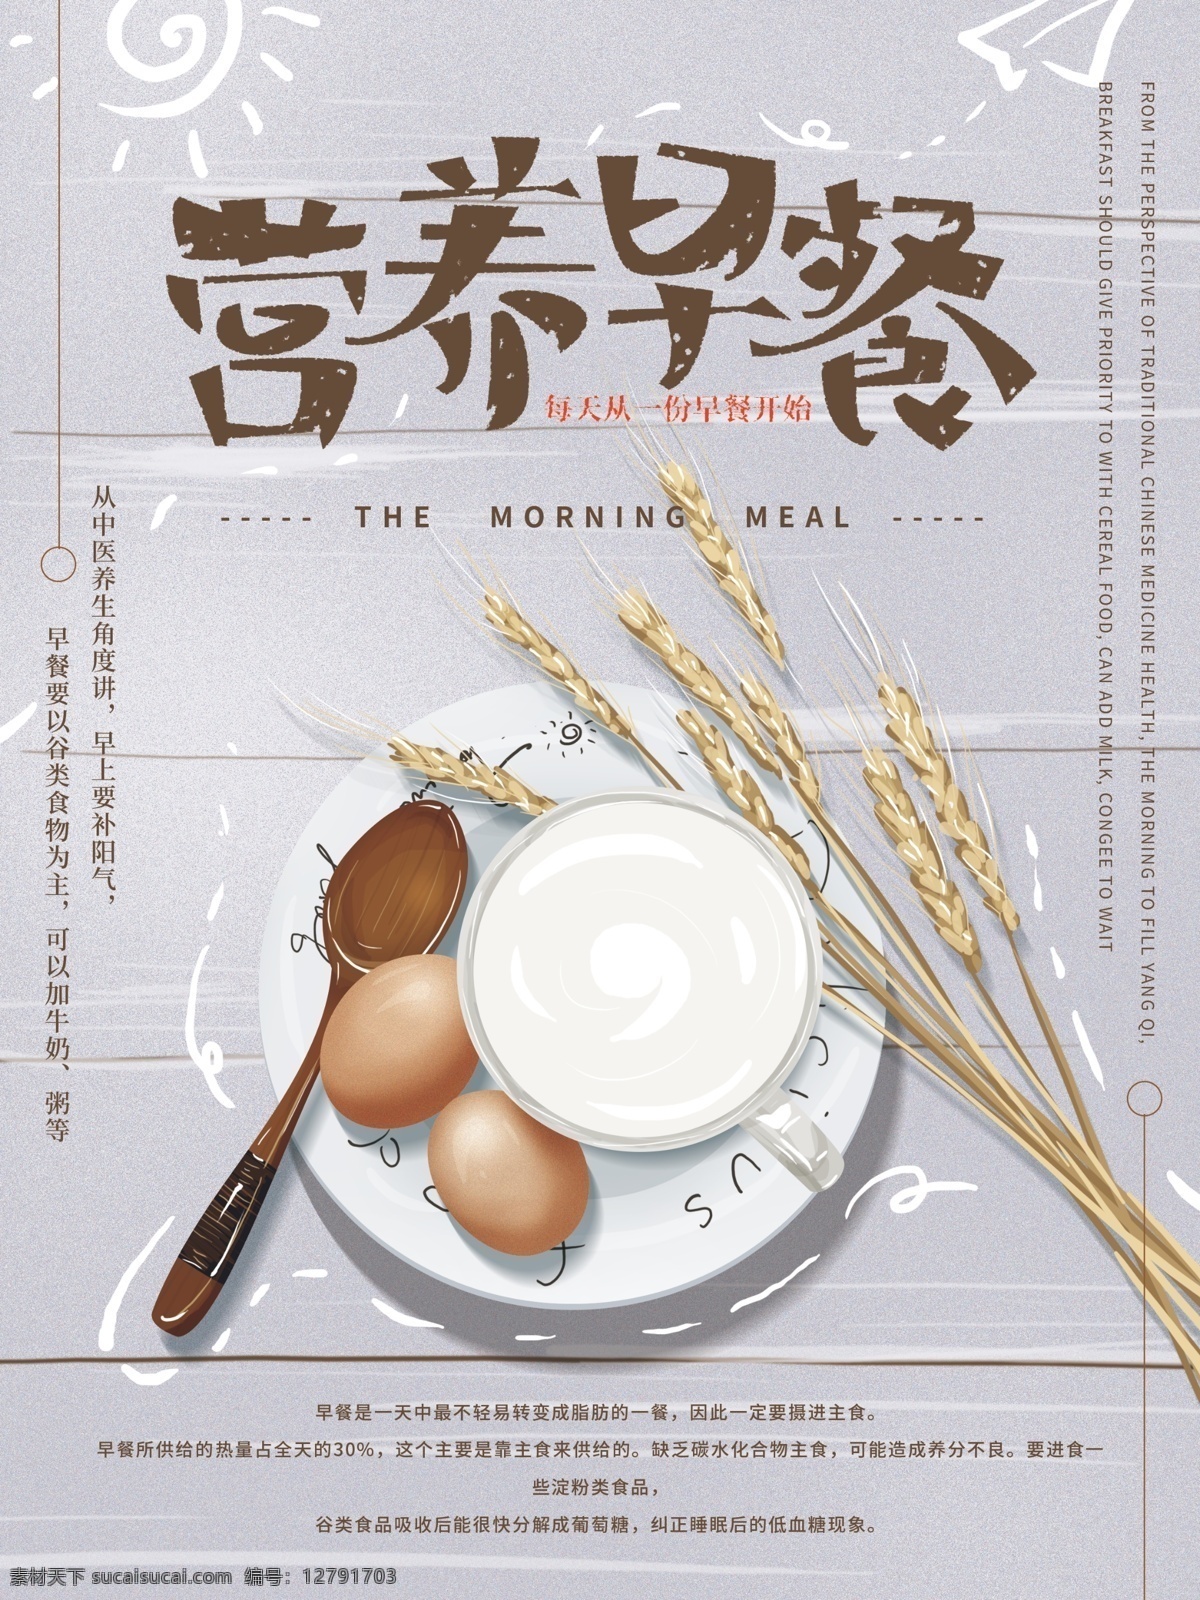 原创 手绘 文艺 营养 早餐 海报 美食 简约 性冷淡 牛奶 鸡蛋